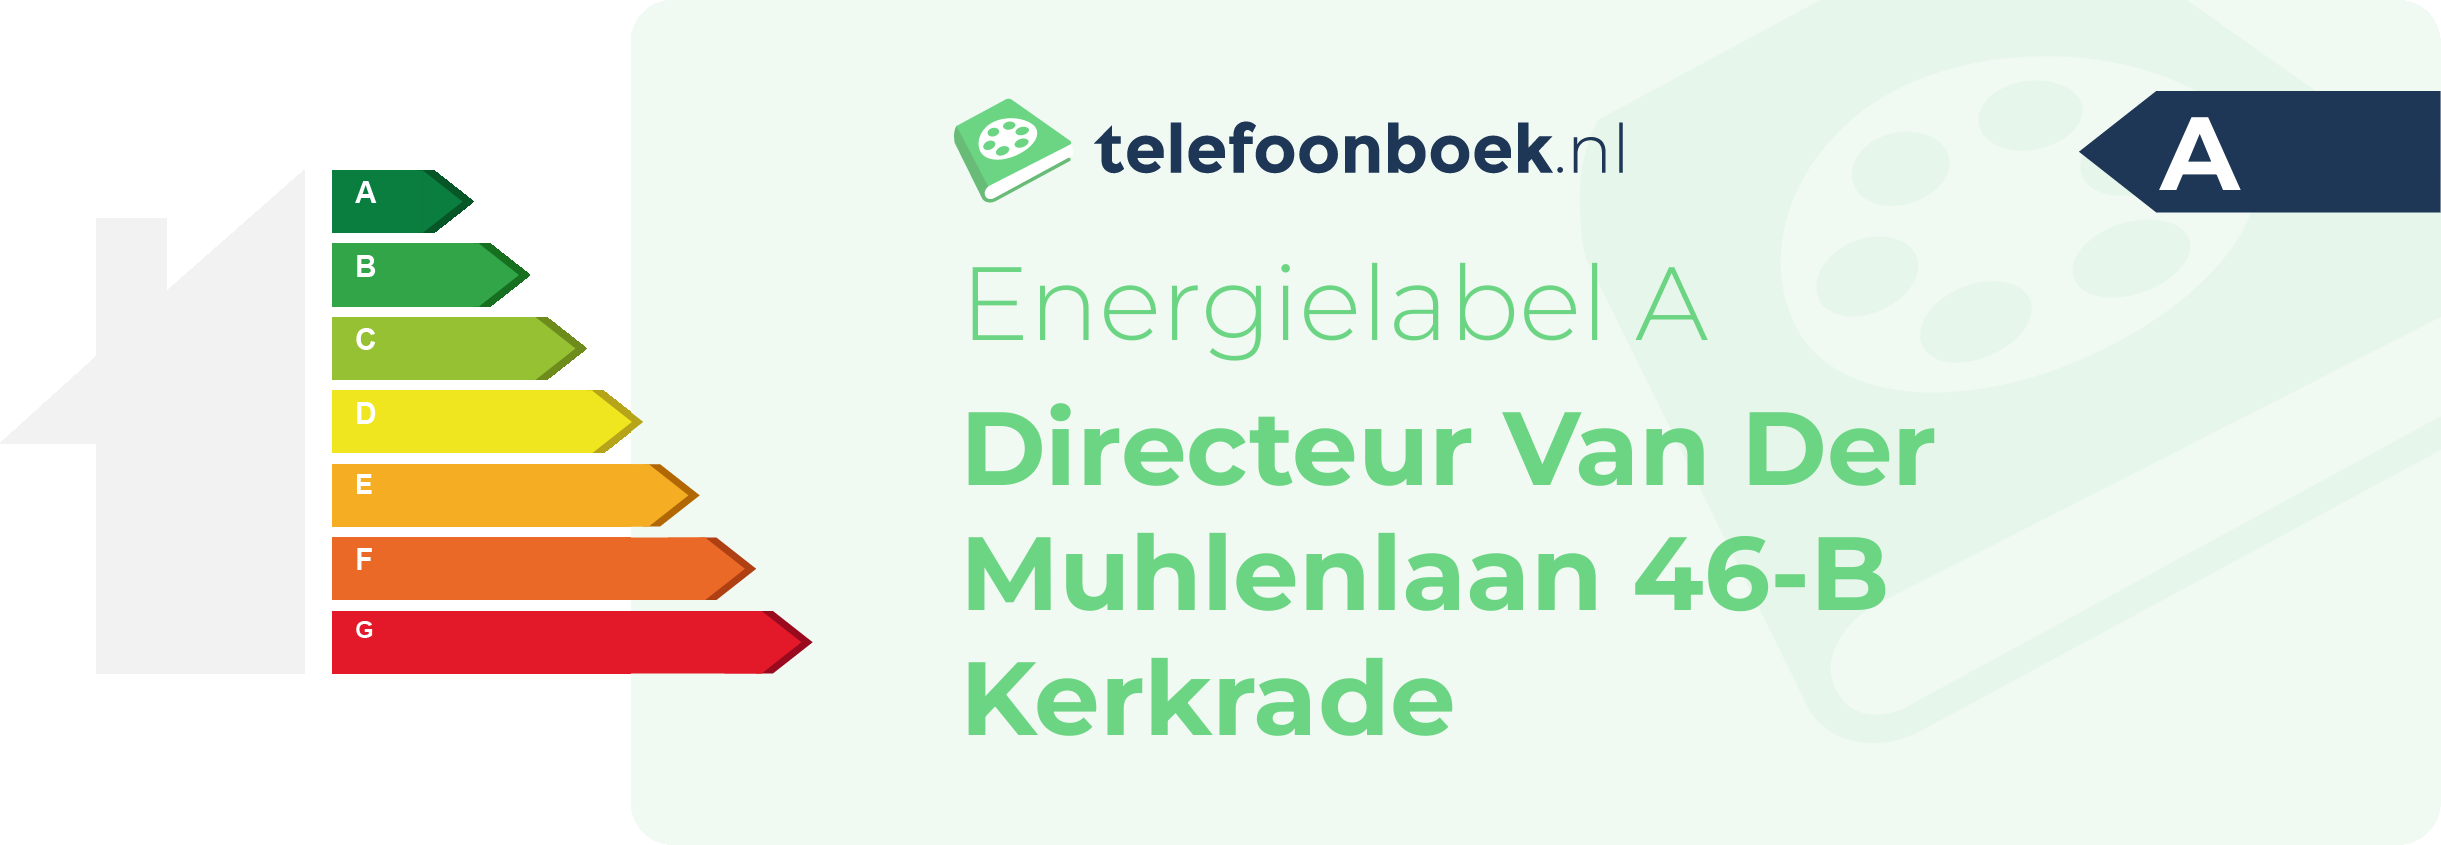 Energielabel Directeur Van Der Muhlenlaan 46-B Kerkrade